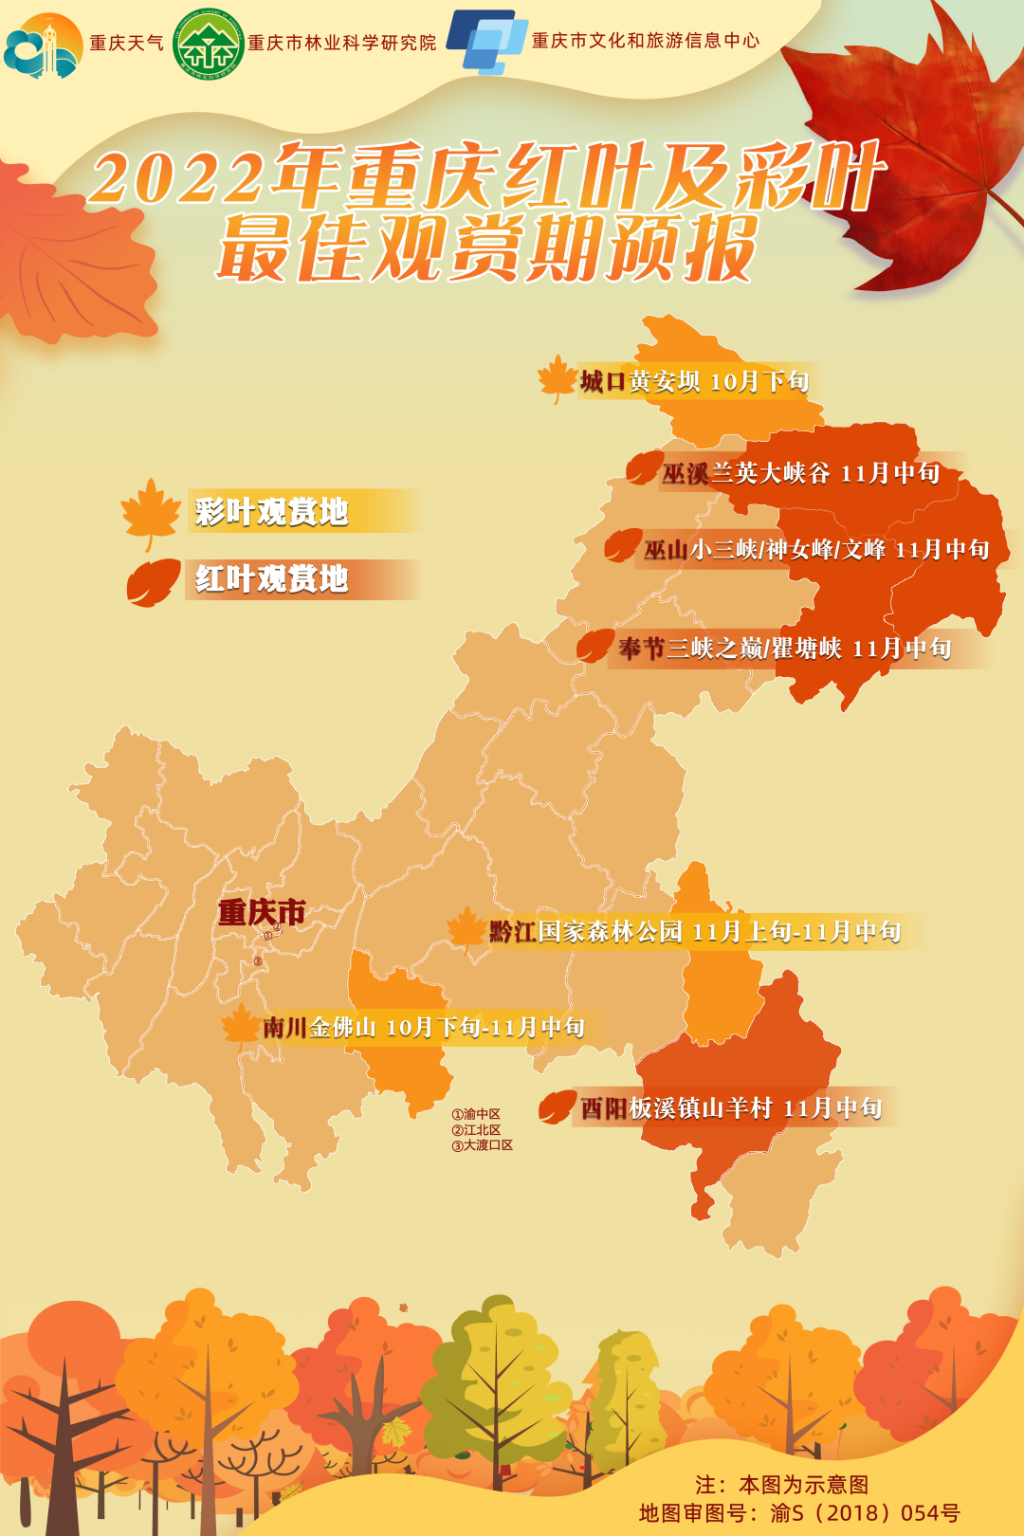 2022年重庆红叶和彩叶最佳观赏期预报图。图源：重庆天气官方公众号